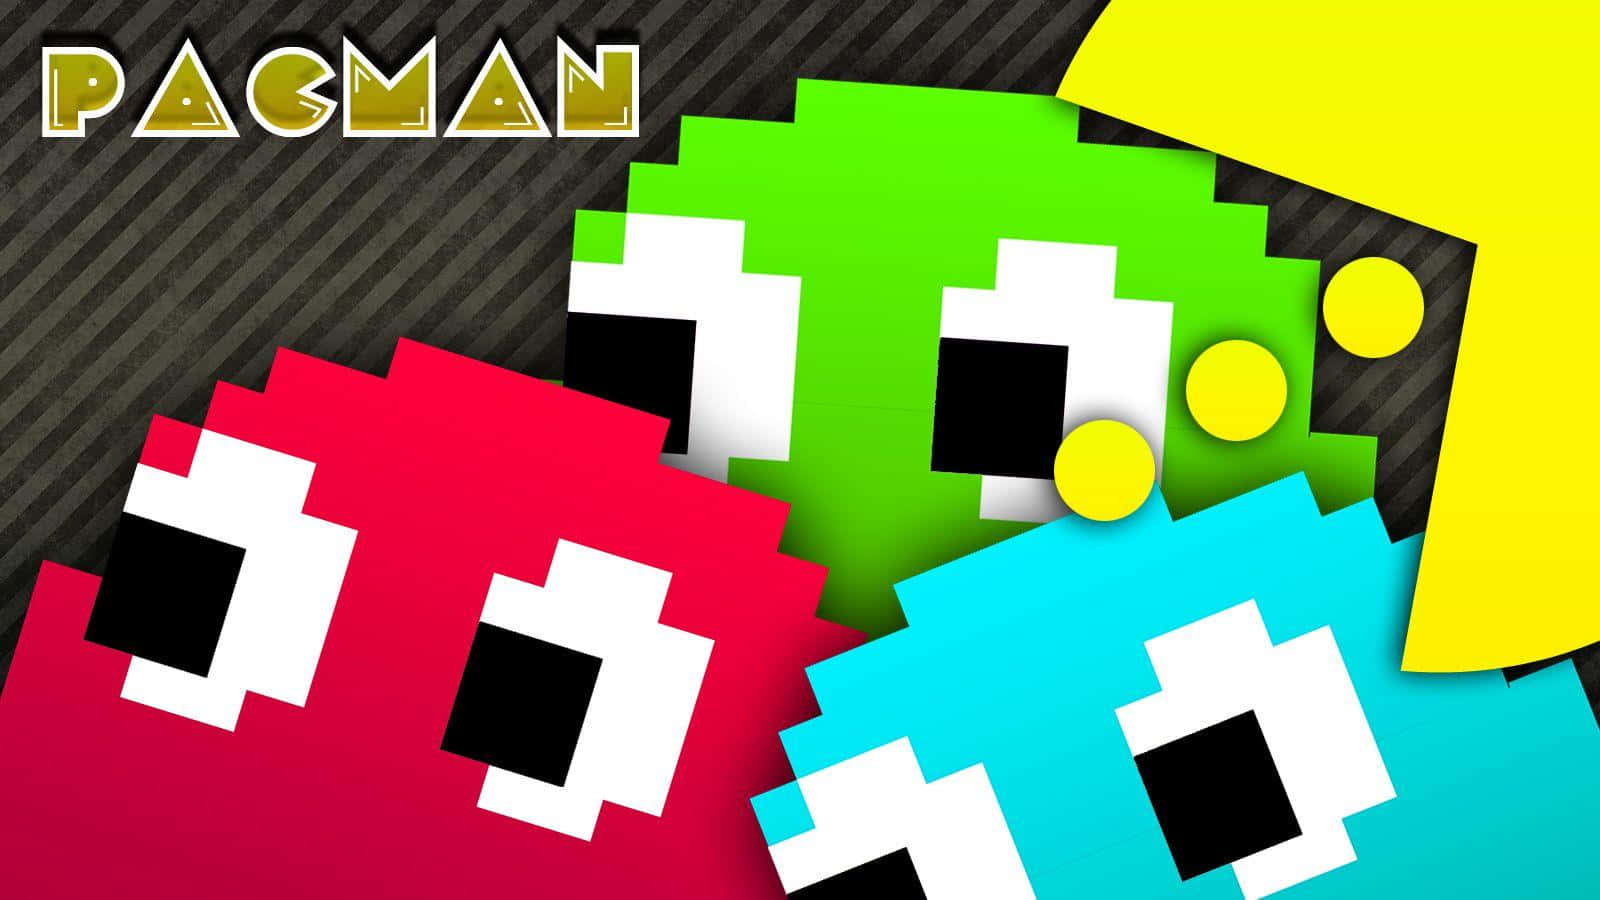 Pacman - Pacman - Pacman - Pacman - Pacman - Pacman - Pac Background